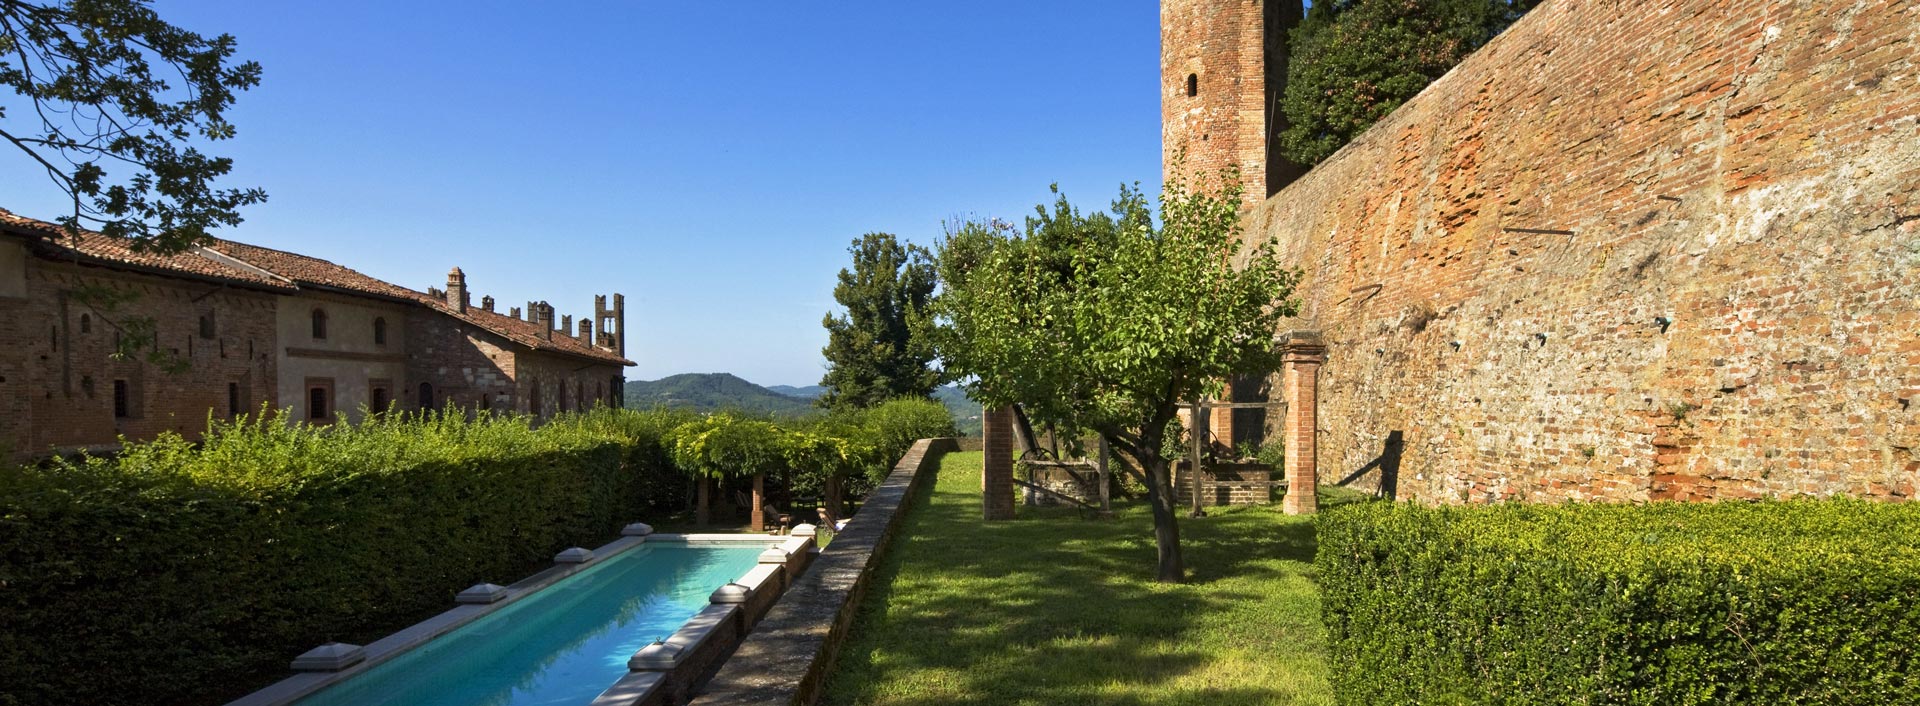 Swimming pool and garden of the Castello di Gabiano